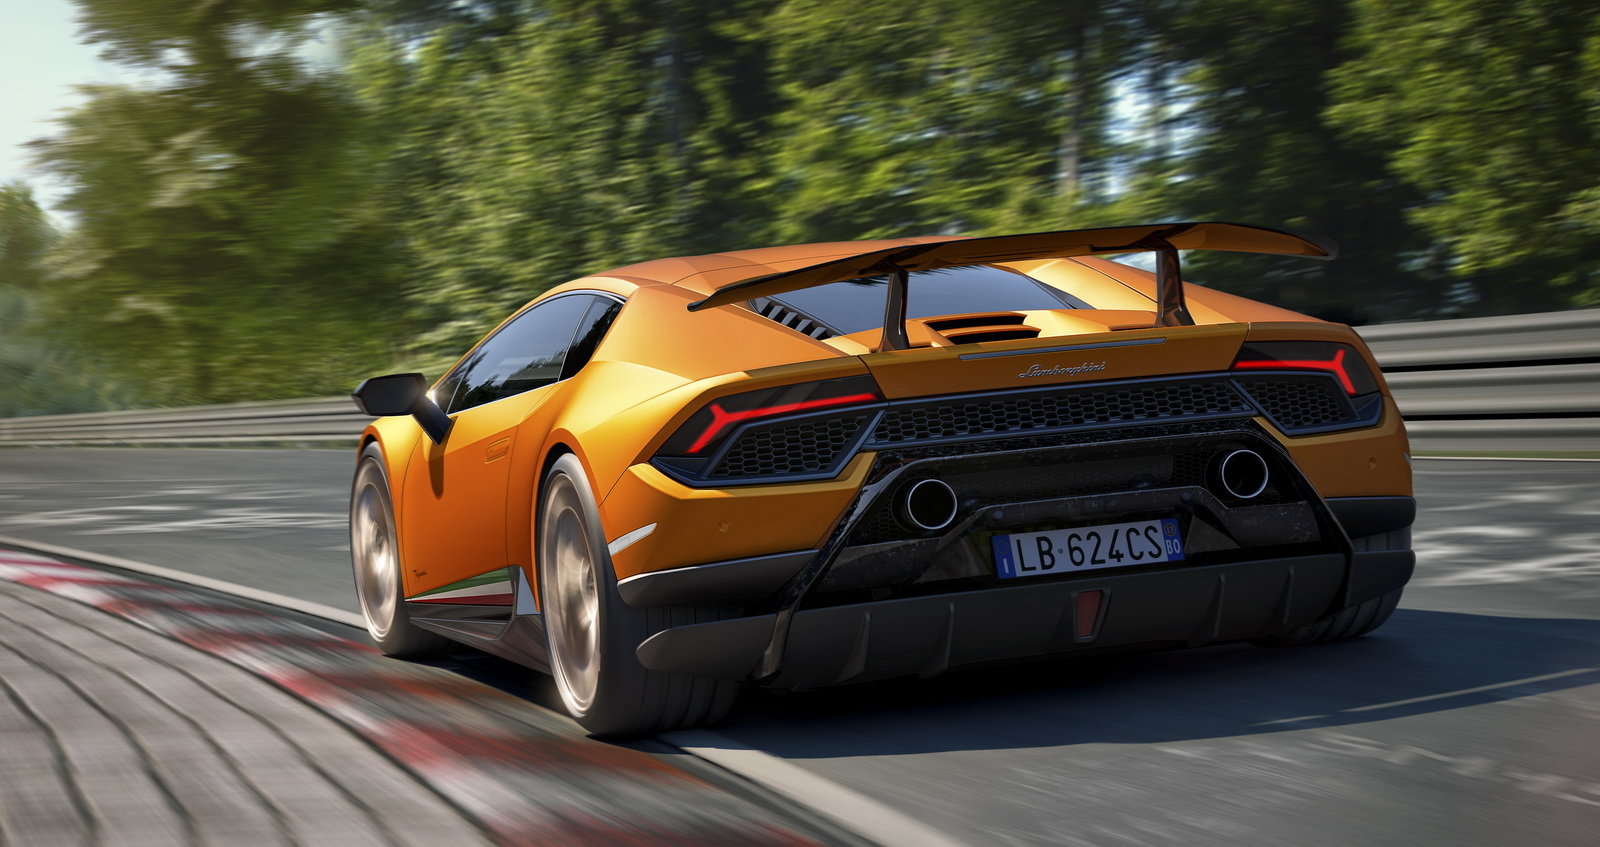 Huracán Performante je aktuálně to nejlepší od Lamborghini.